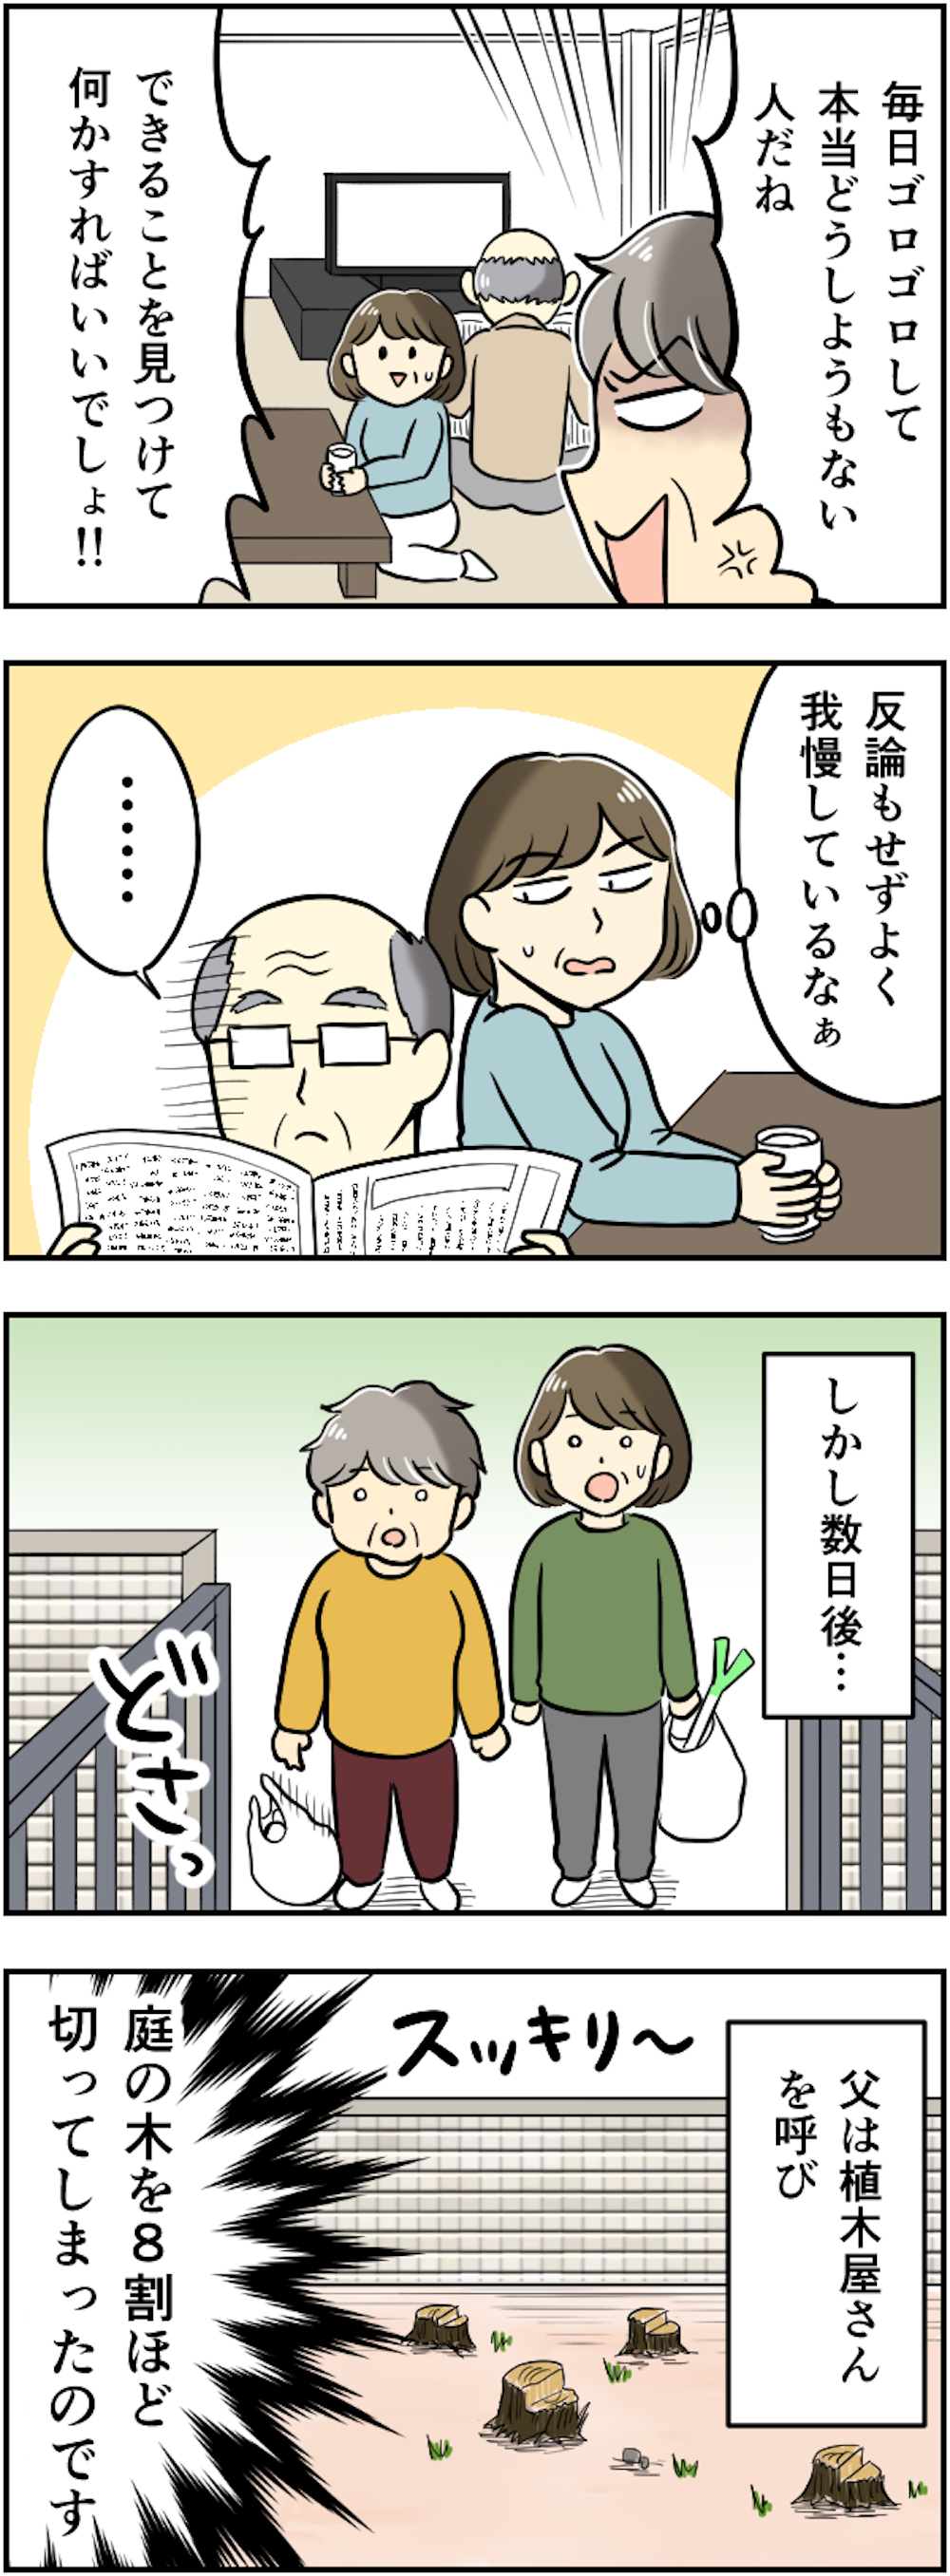 81歳父と79歳母の夫婦喧嘩。暴言に耐え続けた父が密かに考えていた「ある計画」【漫画】 209kansei_003.png